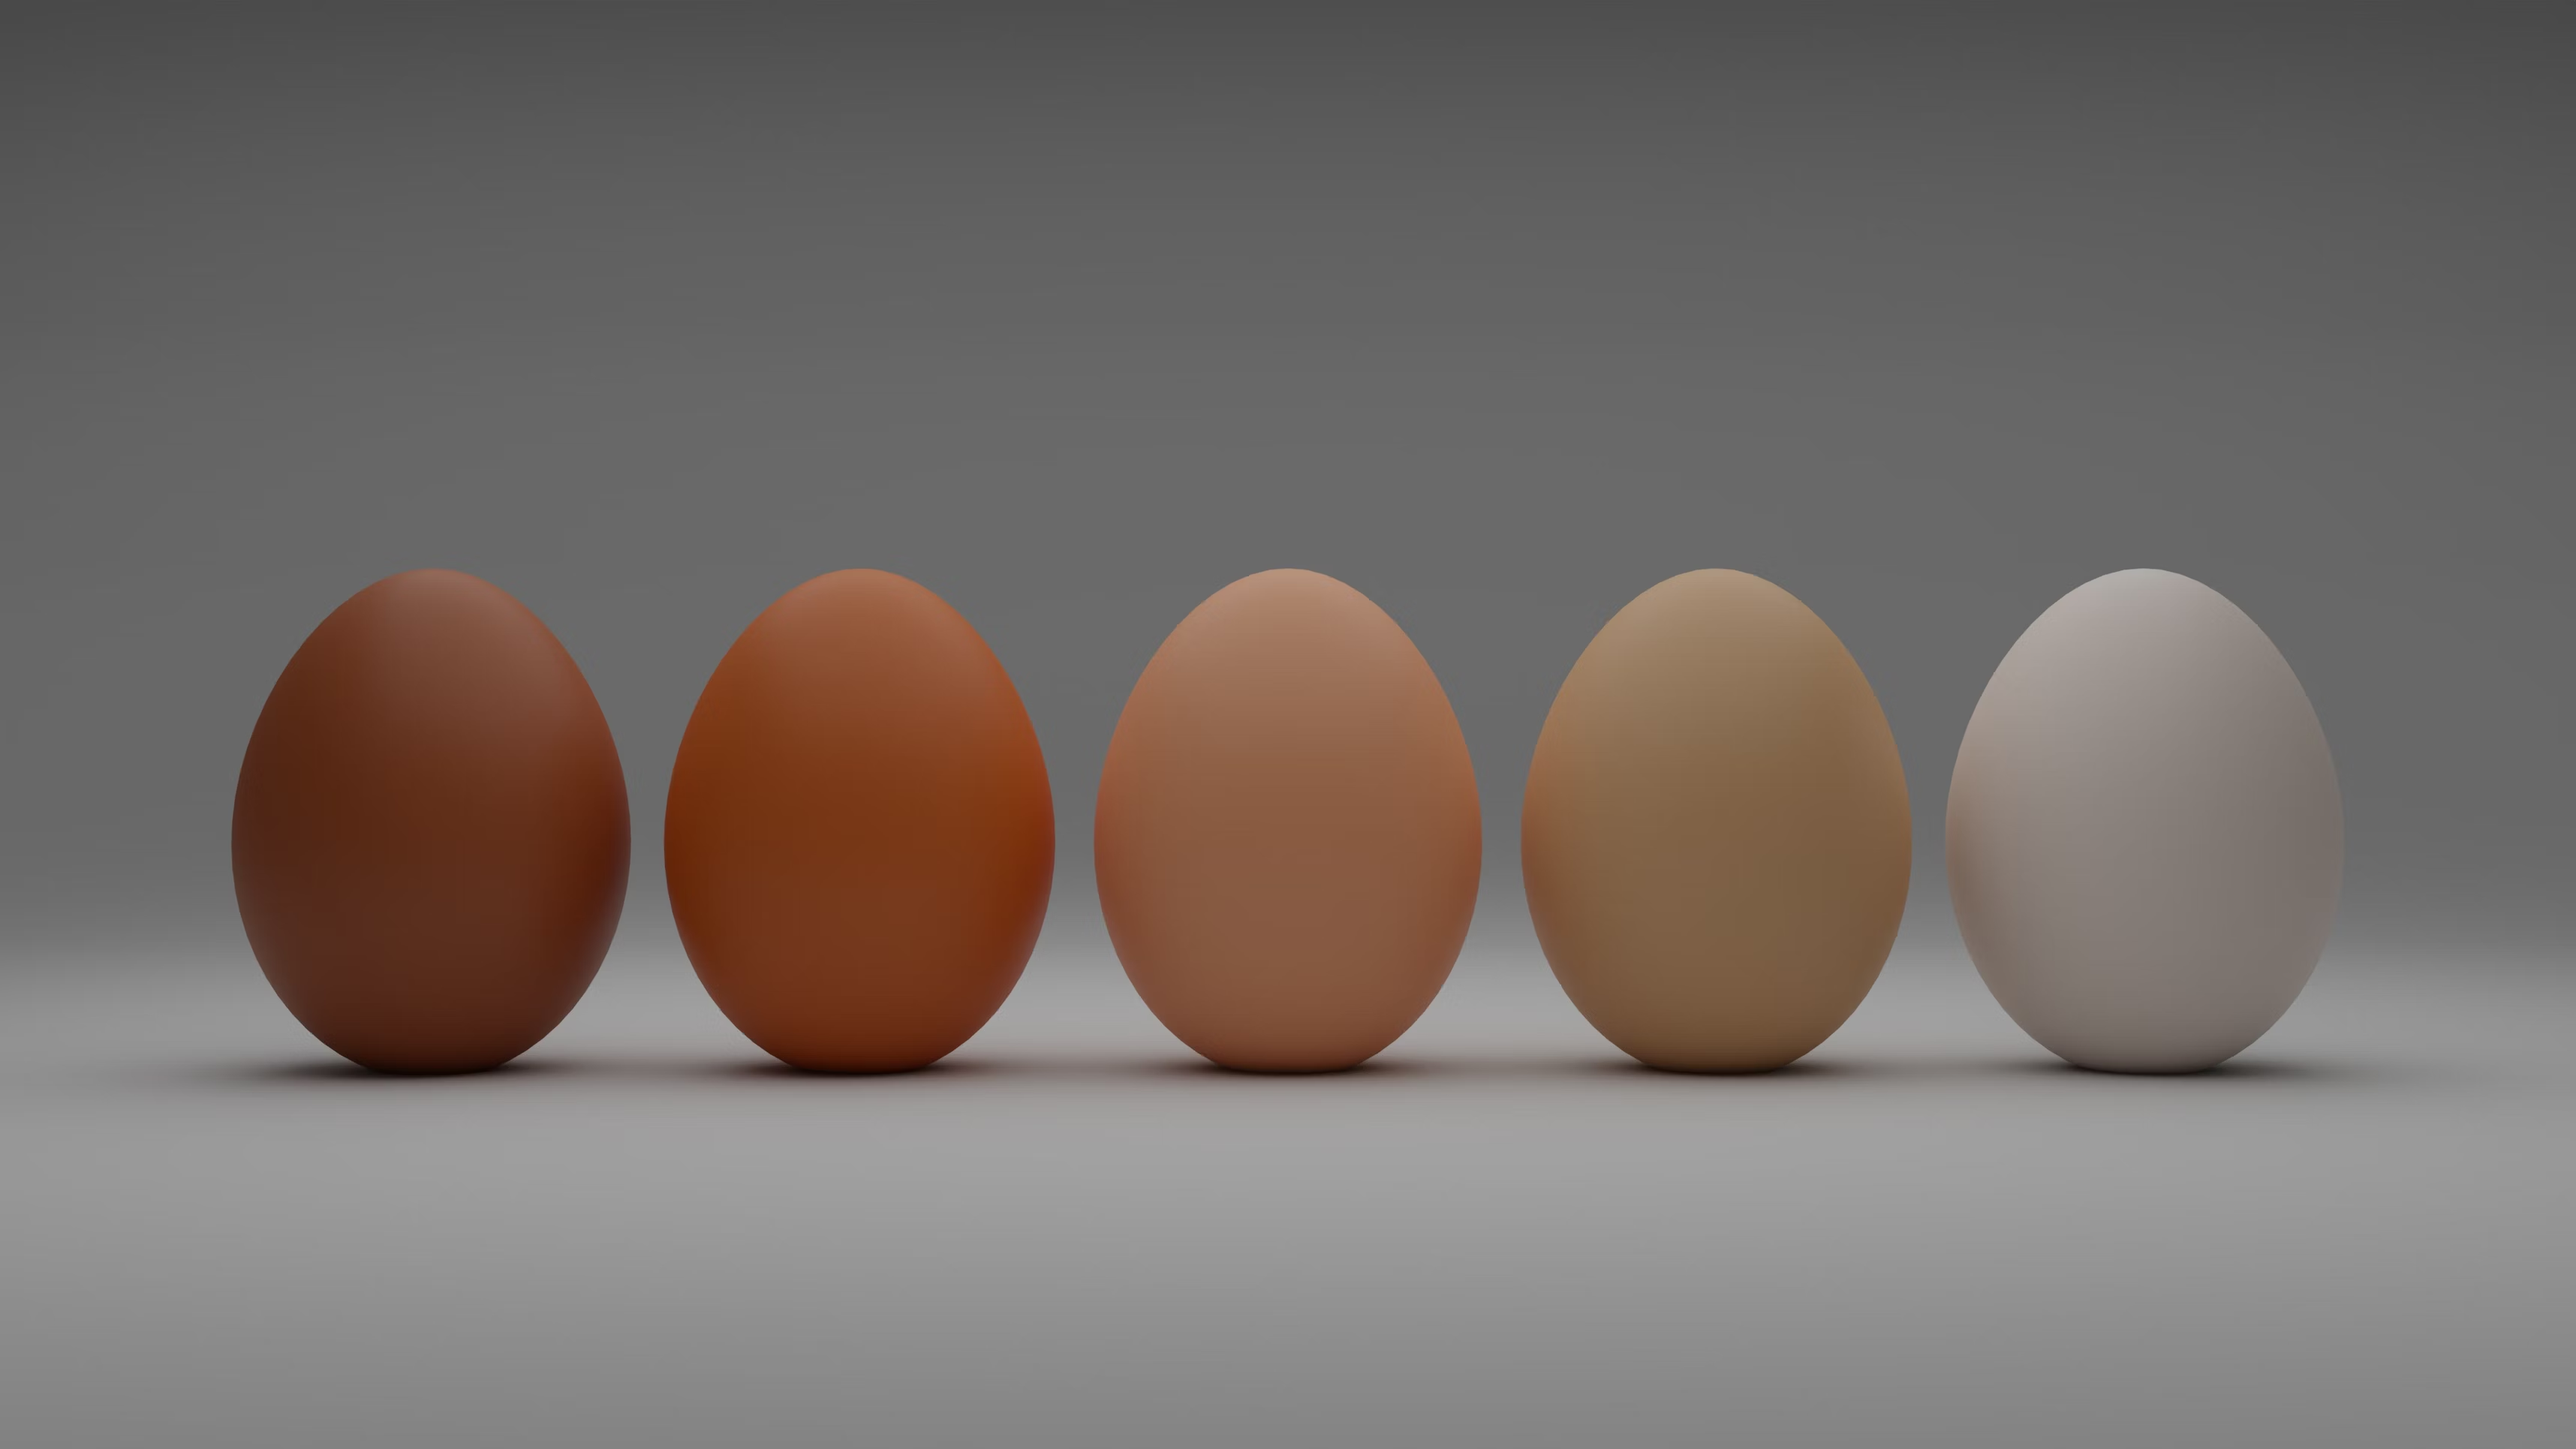 Eier aufgereiht in einer Reihe